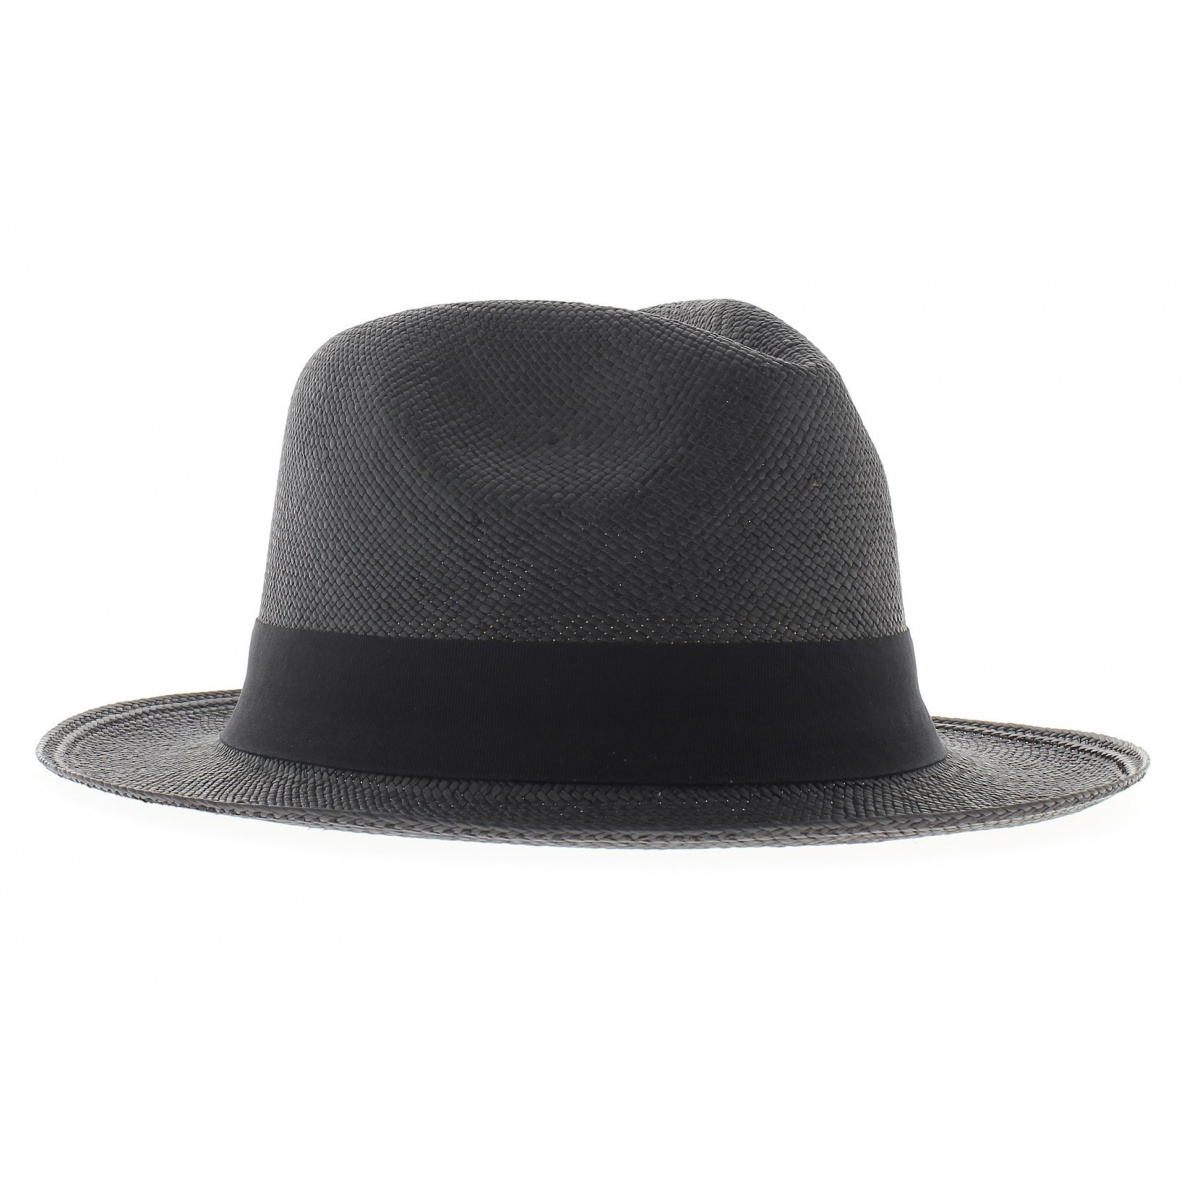 Chapeau Panama noir- achat panama Reference : 3741